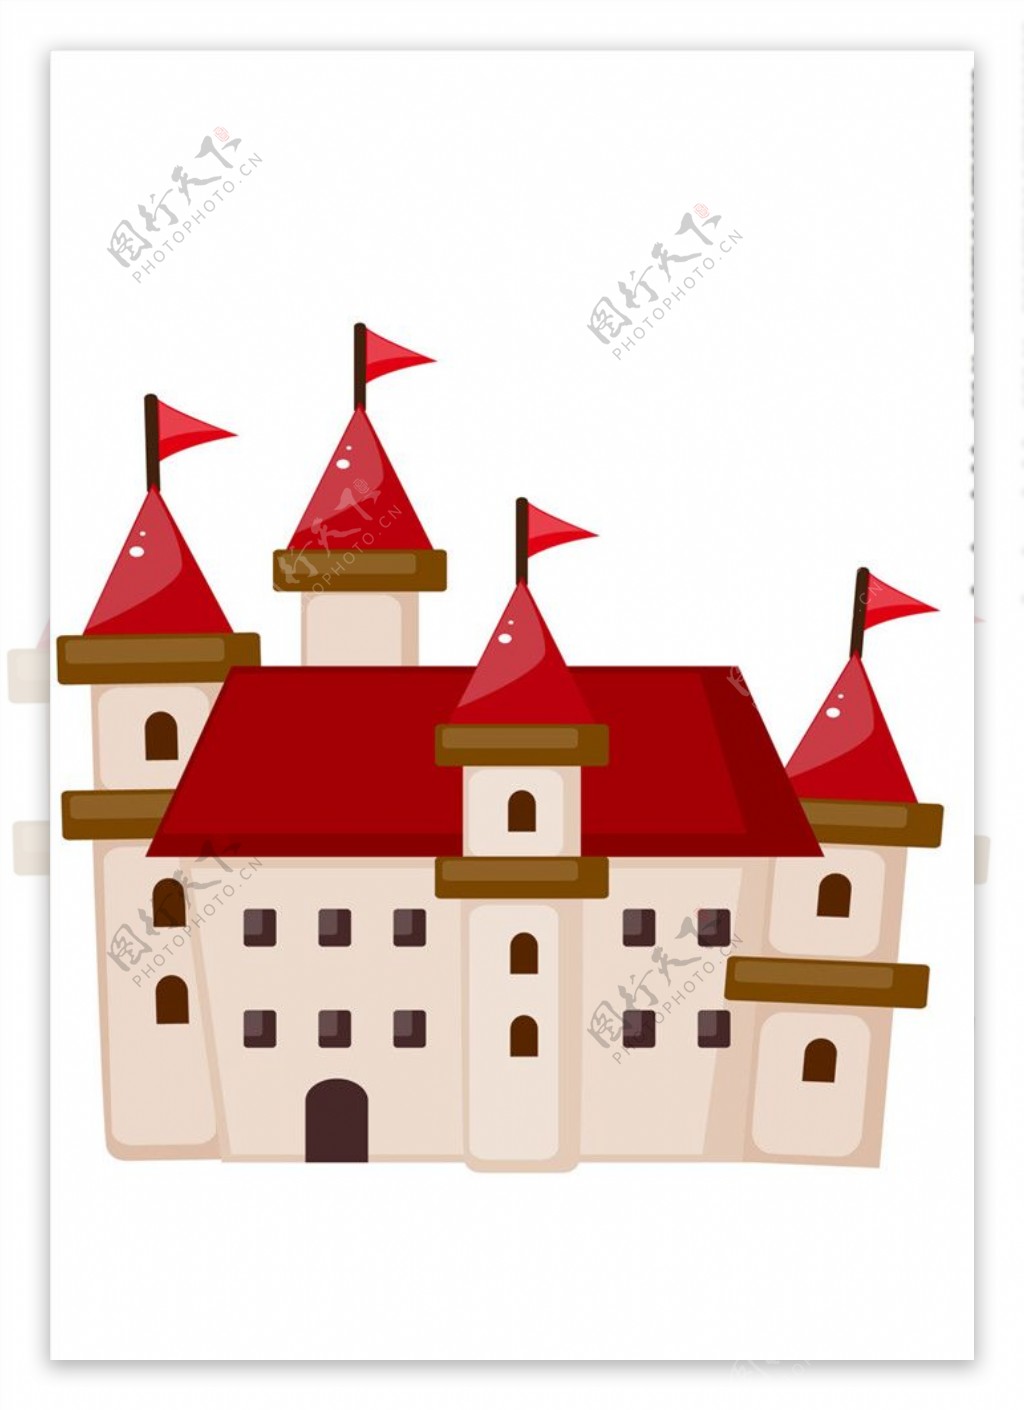 城堡小插图元素